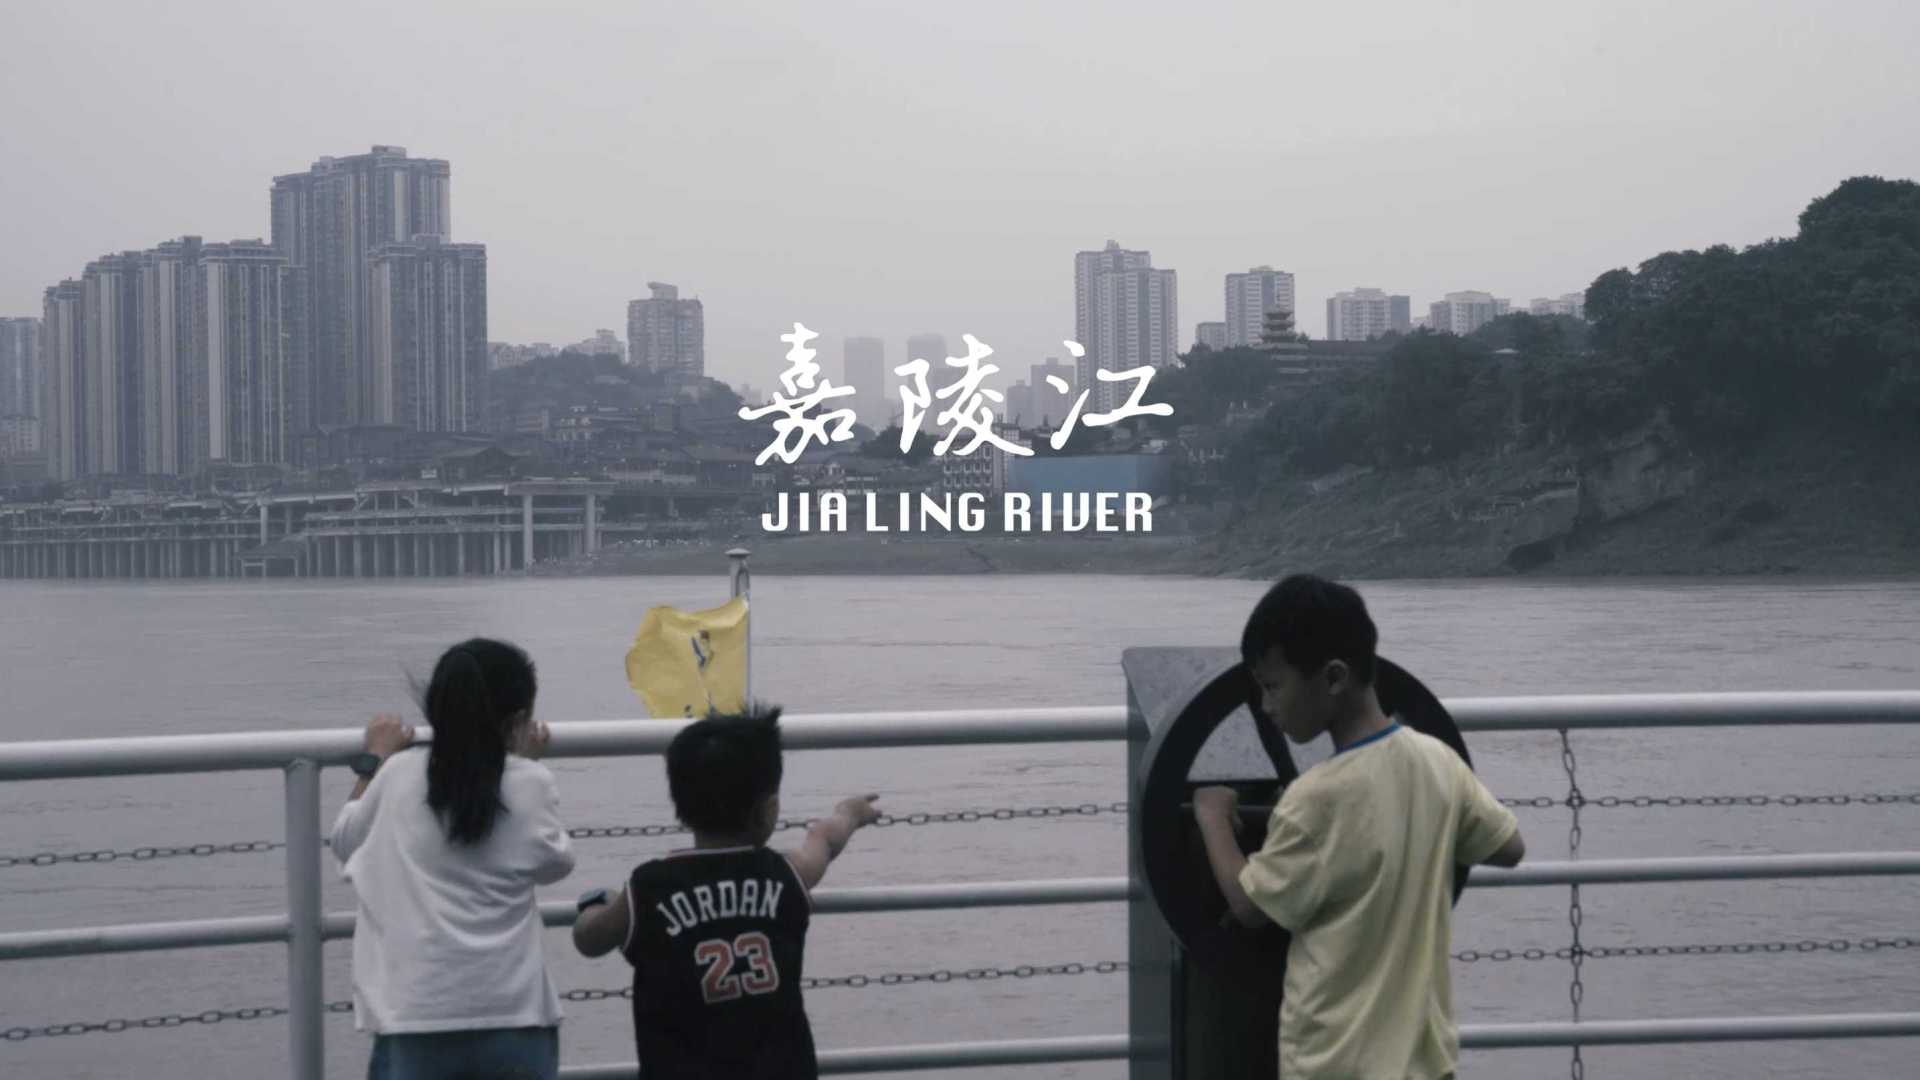 嘉陵江 JIALING RIVER